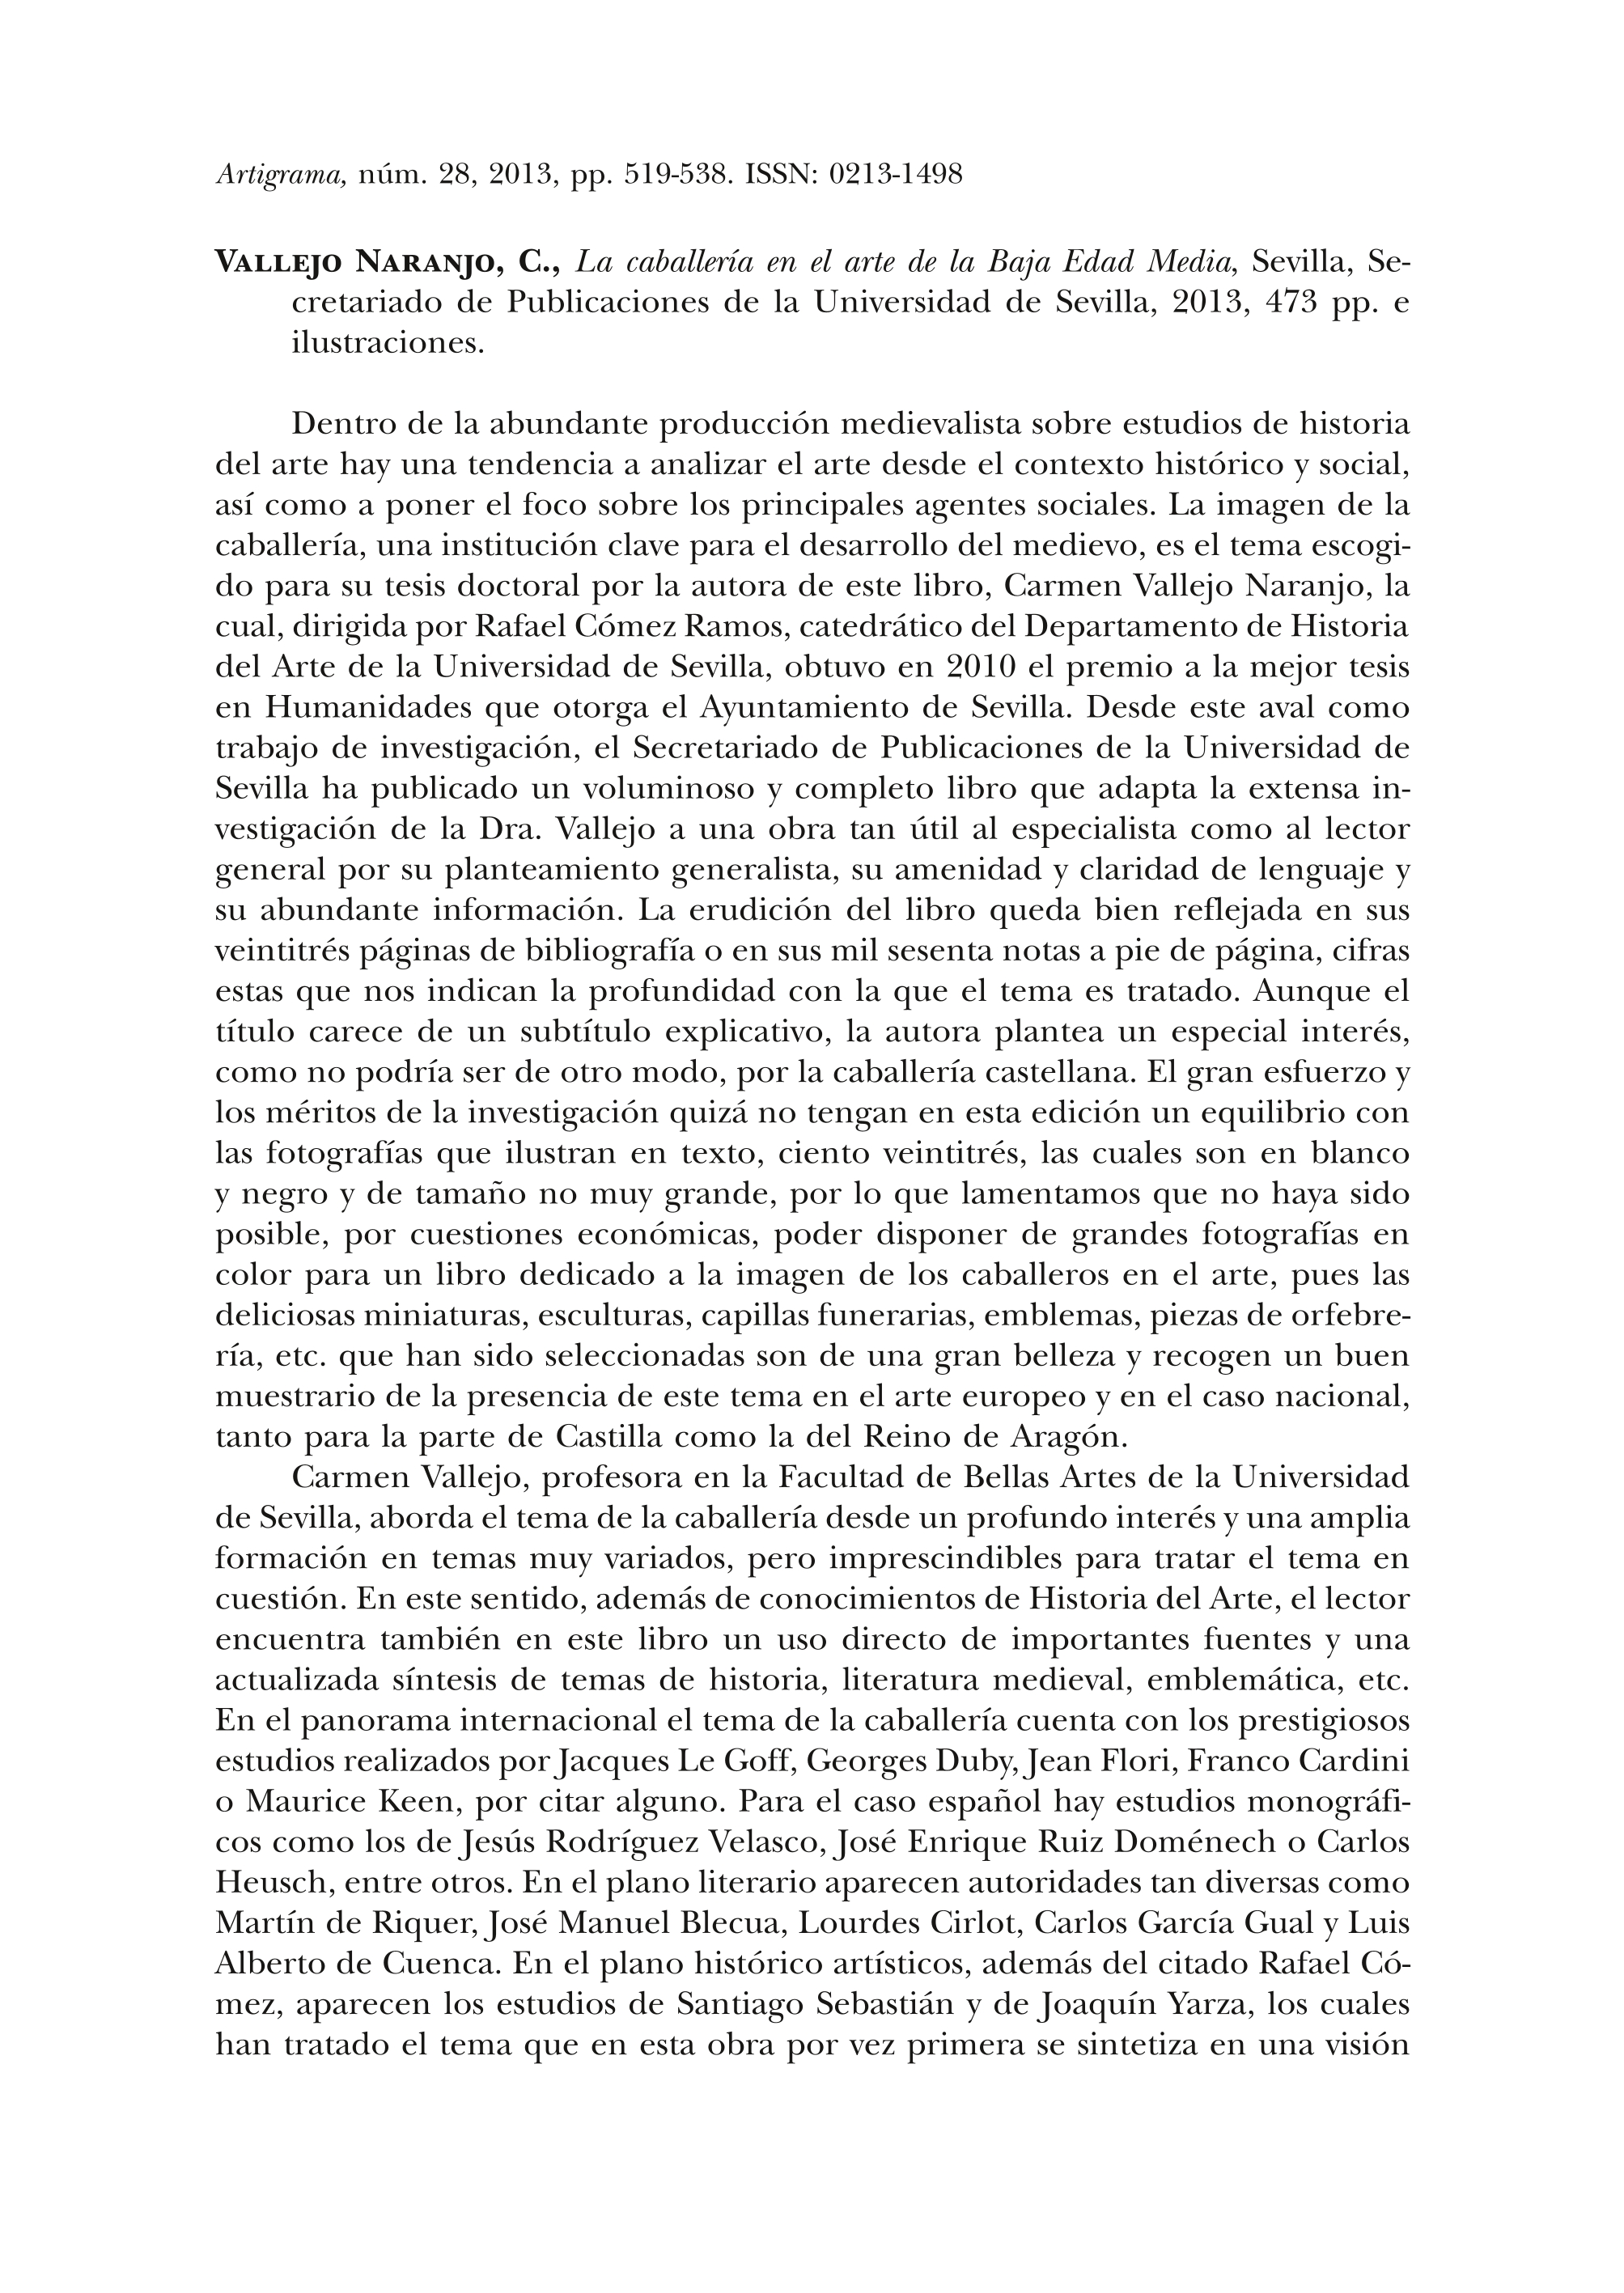 Vallejo Naranjo, C., La caballería en el arte de la Baja Edad Media, Sevilla, Se- cretariado de Publicaciones de la Universidad de Sevilla, 2013